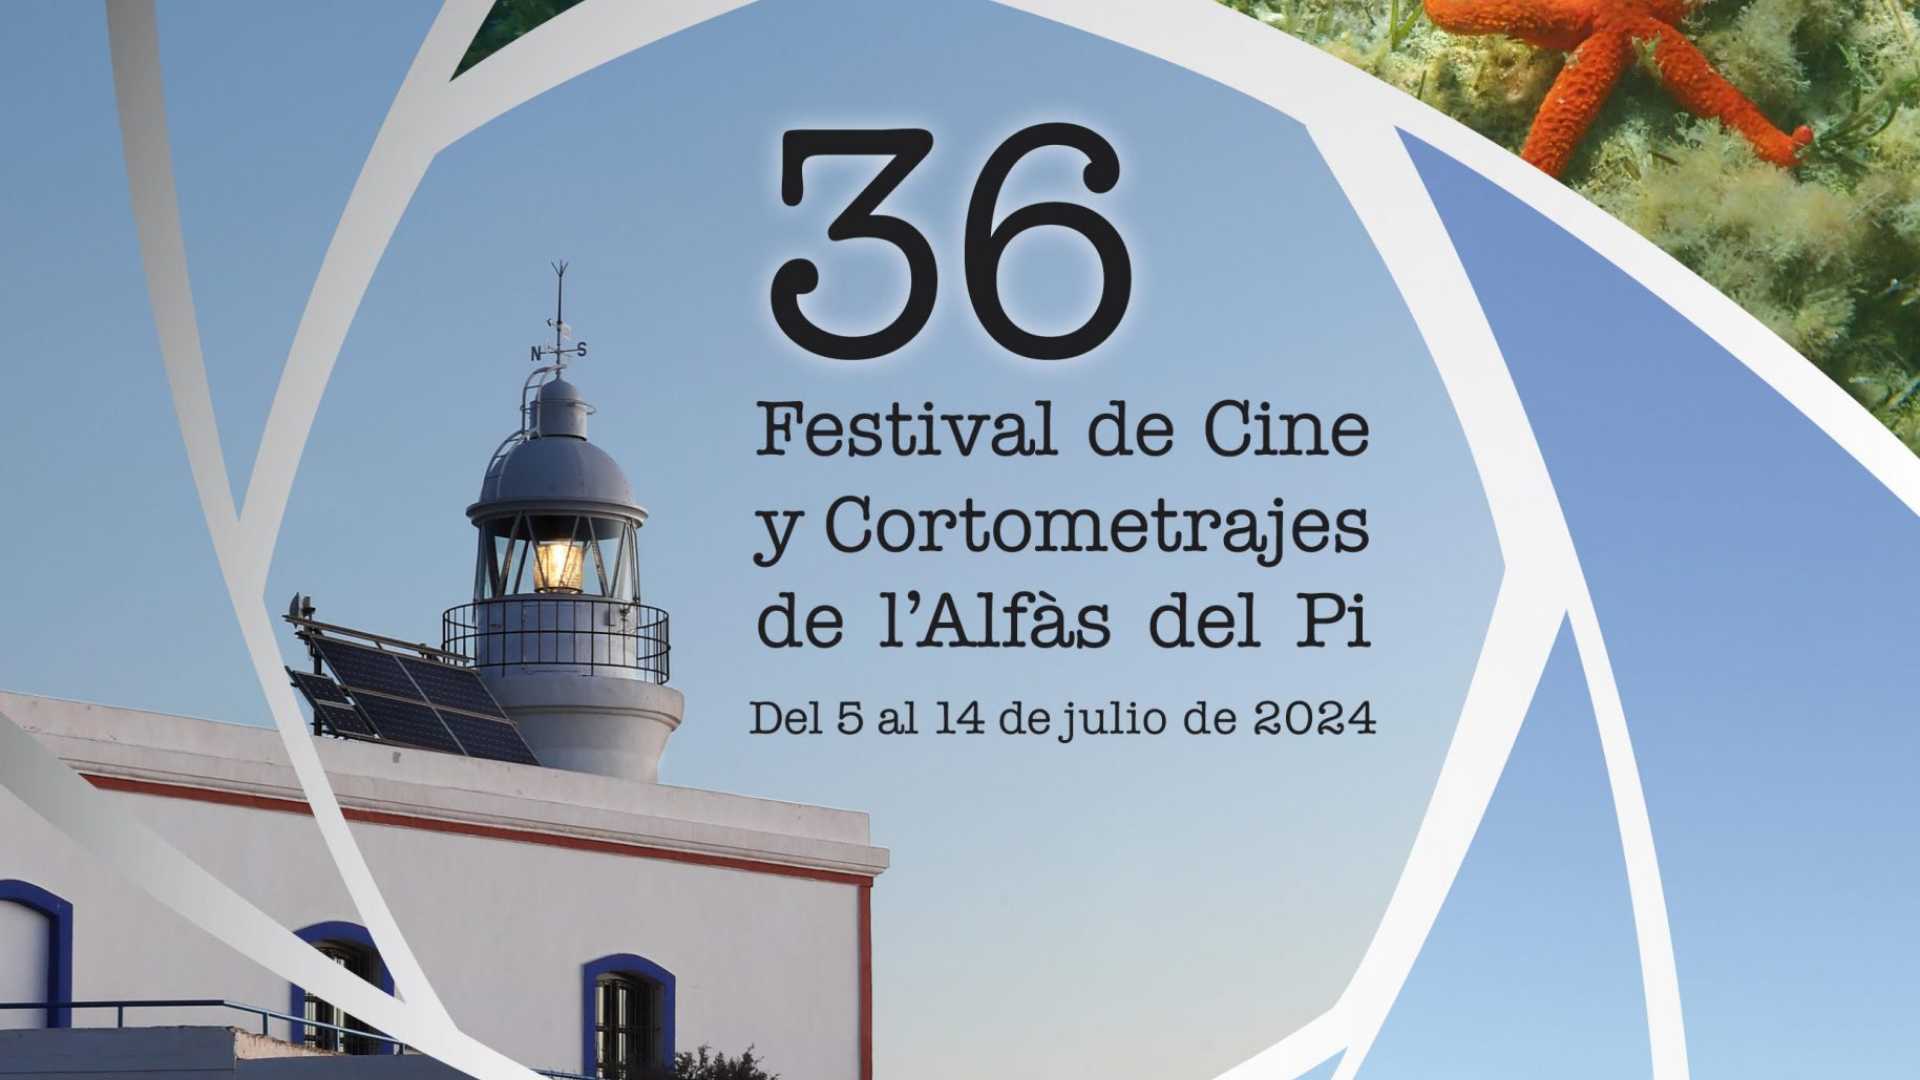 El Festival de Cine de l’Alfas del Pi celebra su 36 edición